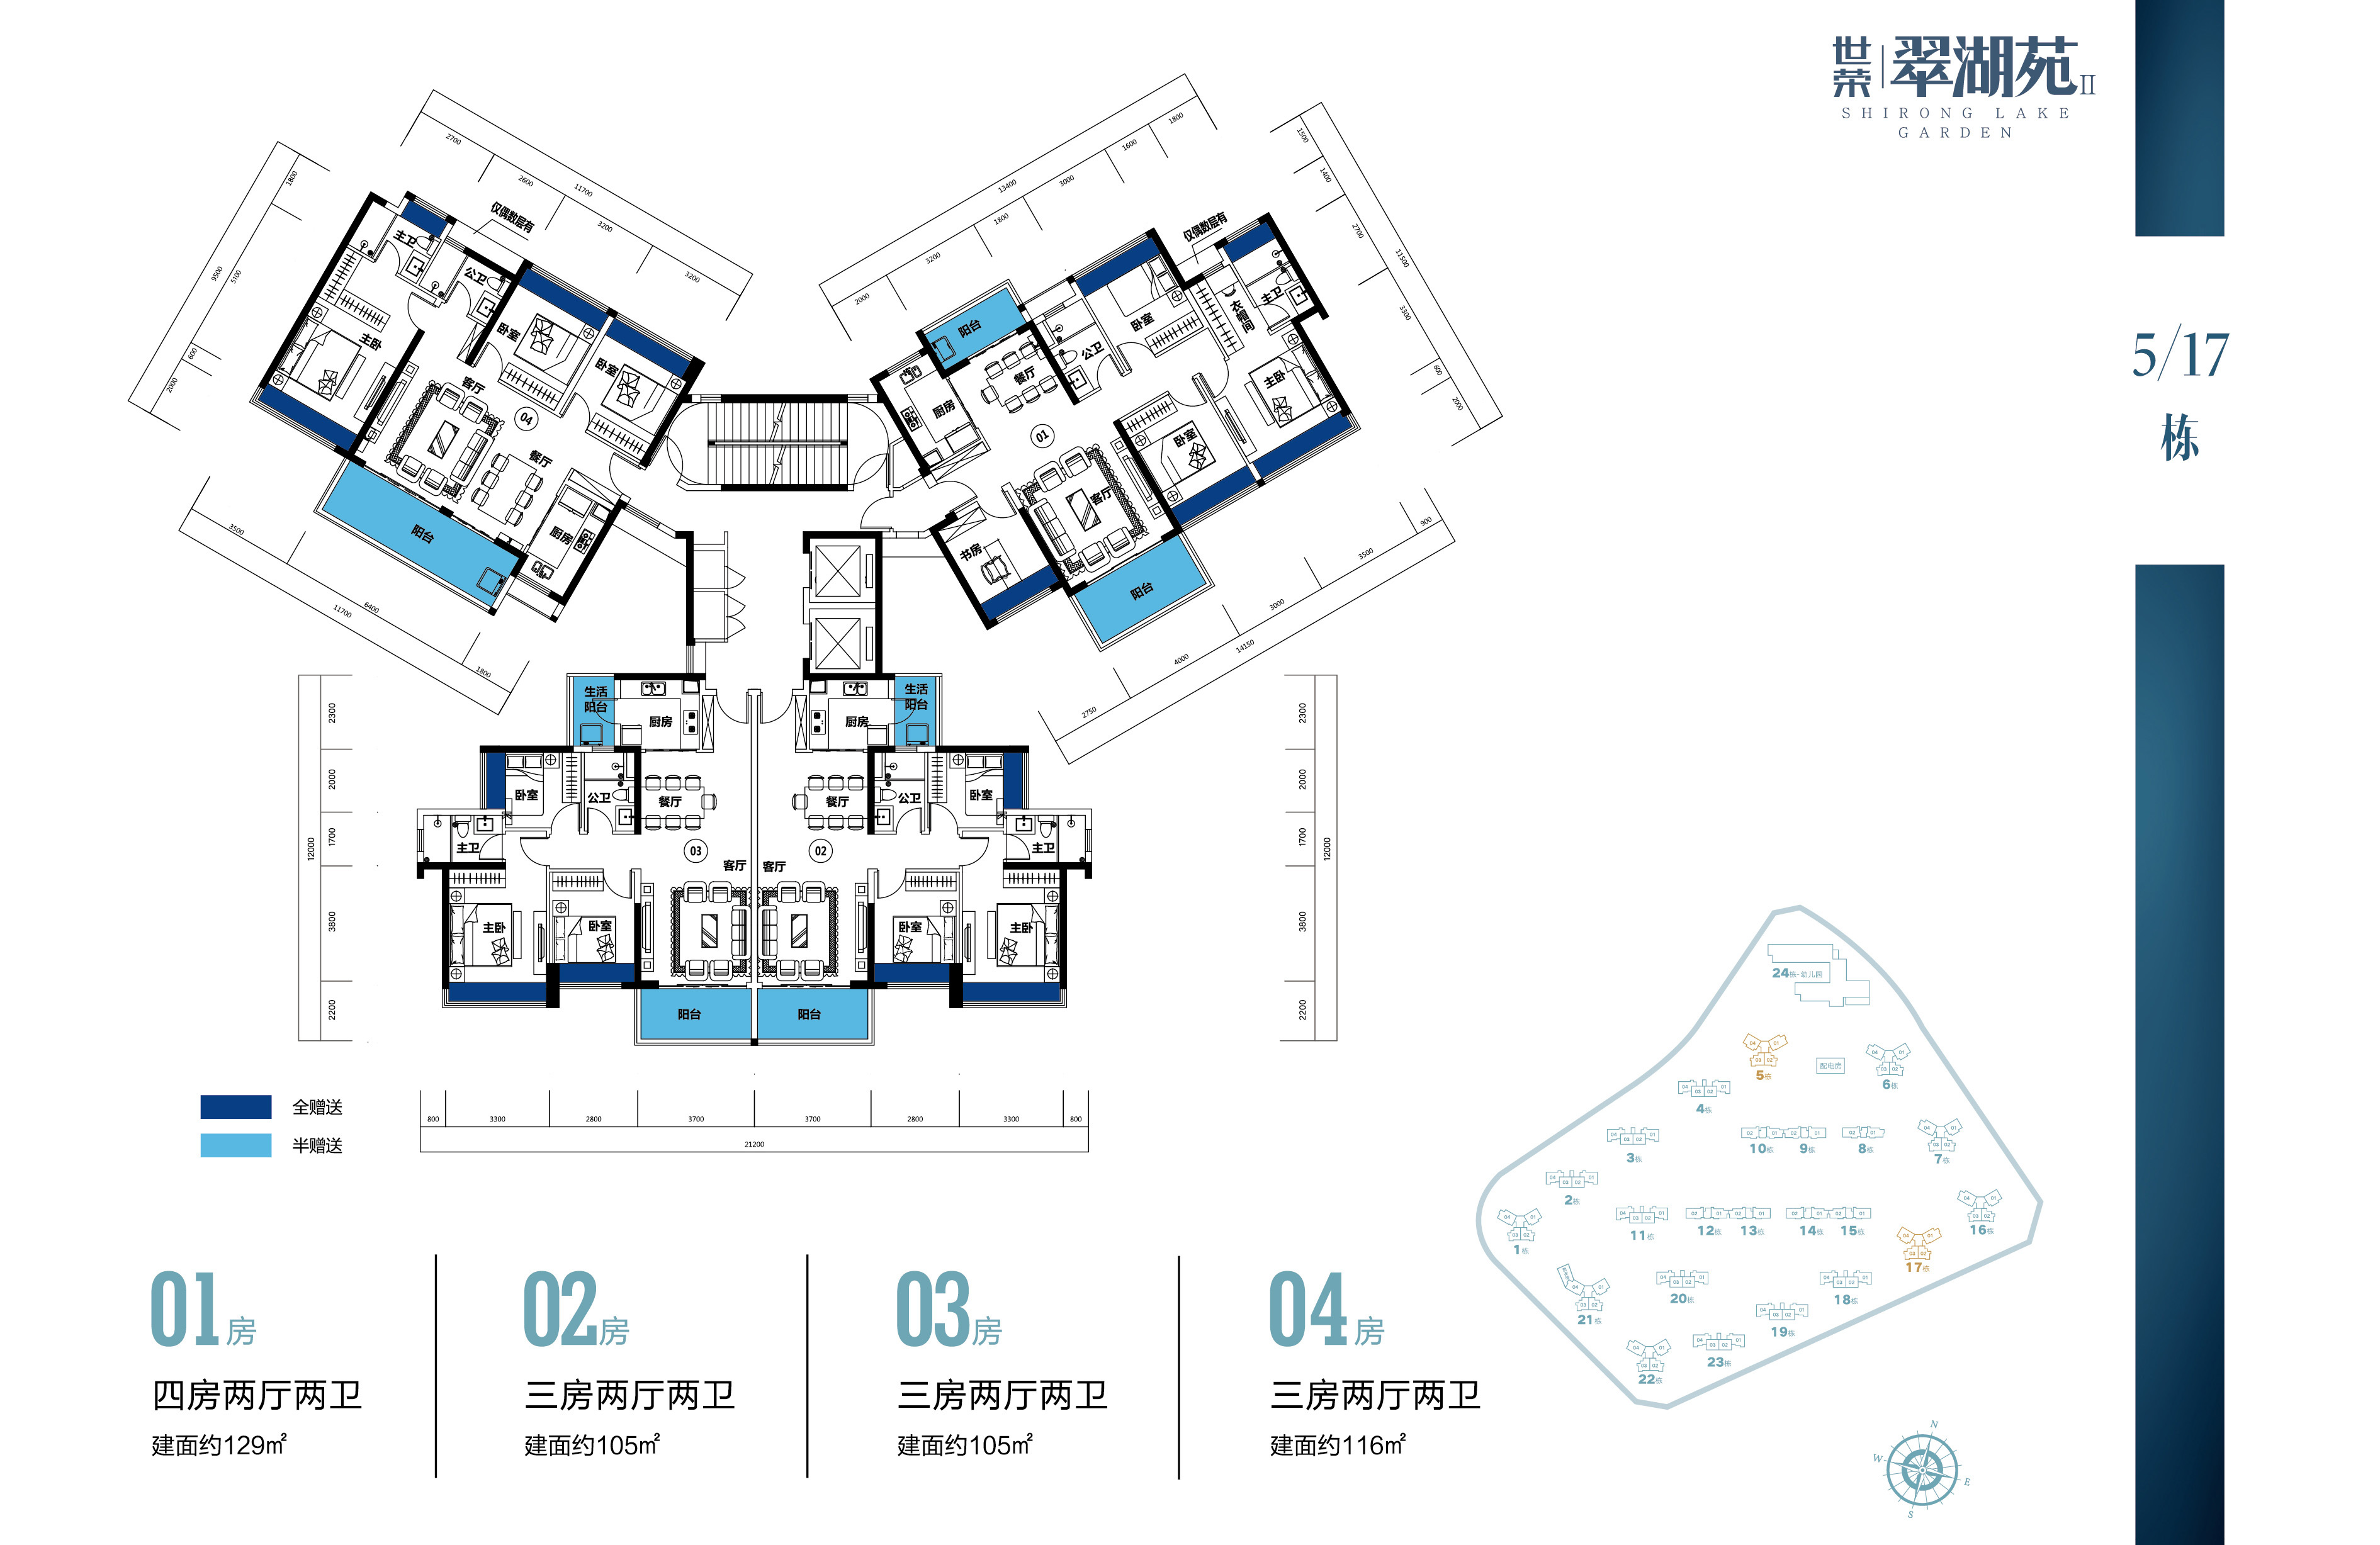 世荣翠湖苑二期 5、17栋楼层平面图 多种户型 建面105-129㎡